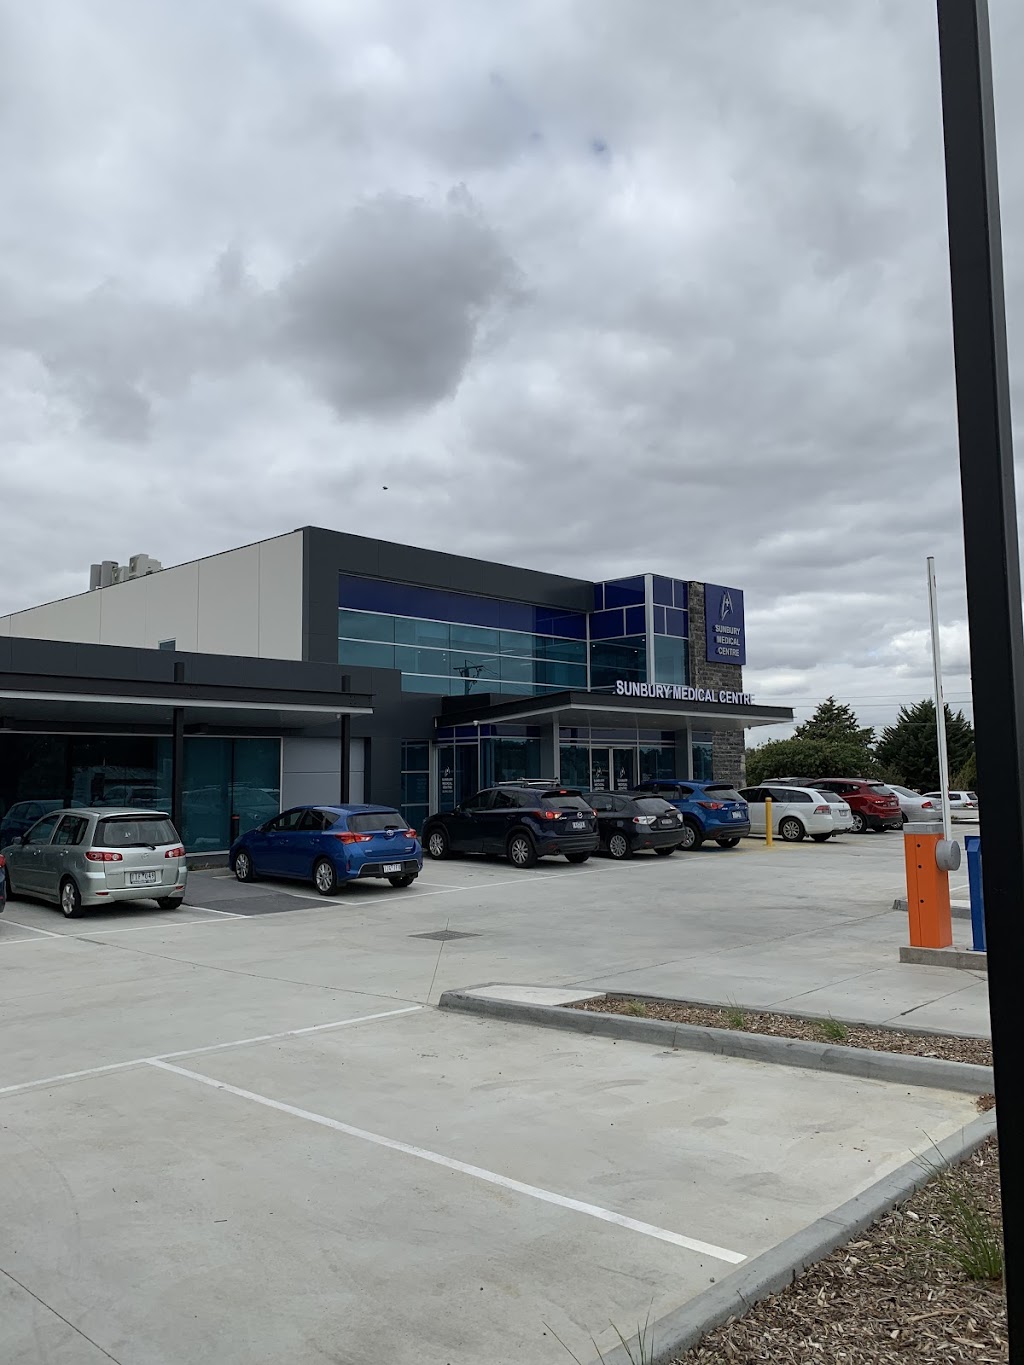 Sunbury Medical Centre Pharmacy | 38-44 Gap Rd, Sunbury VIC 3429, Australia | Phone: (03) 9744 7005